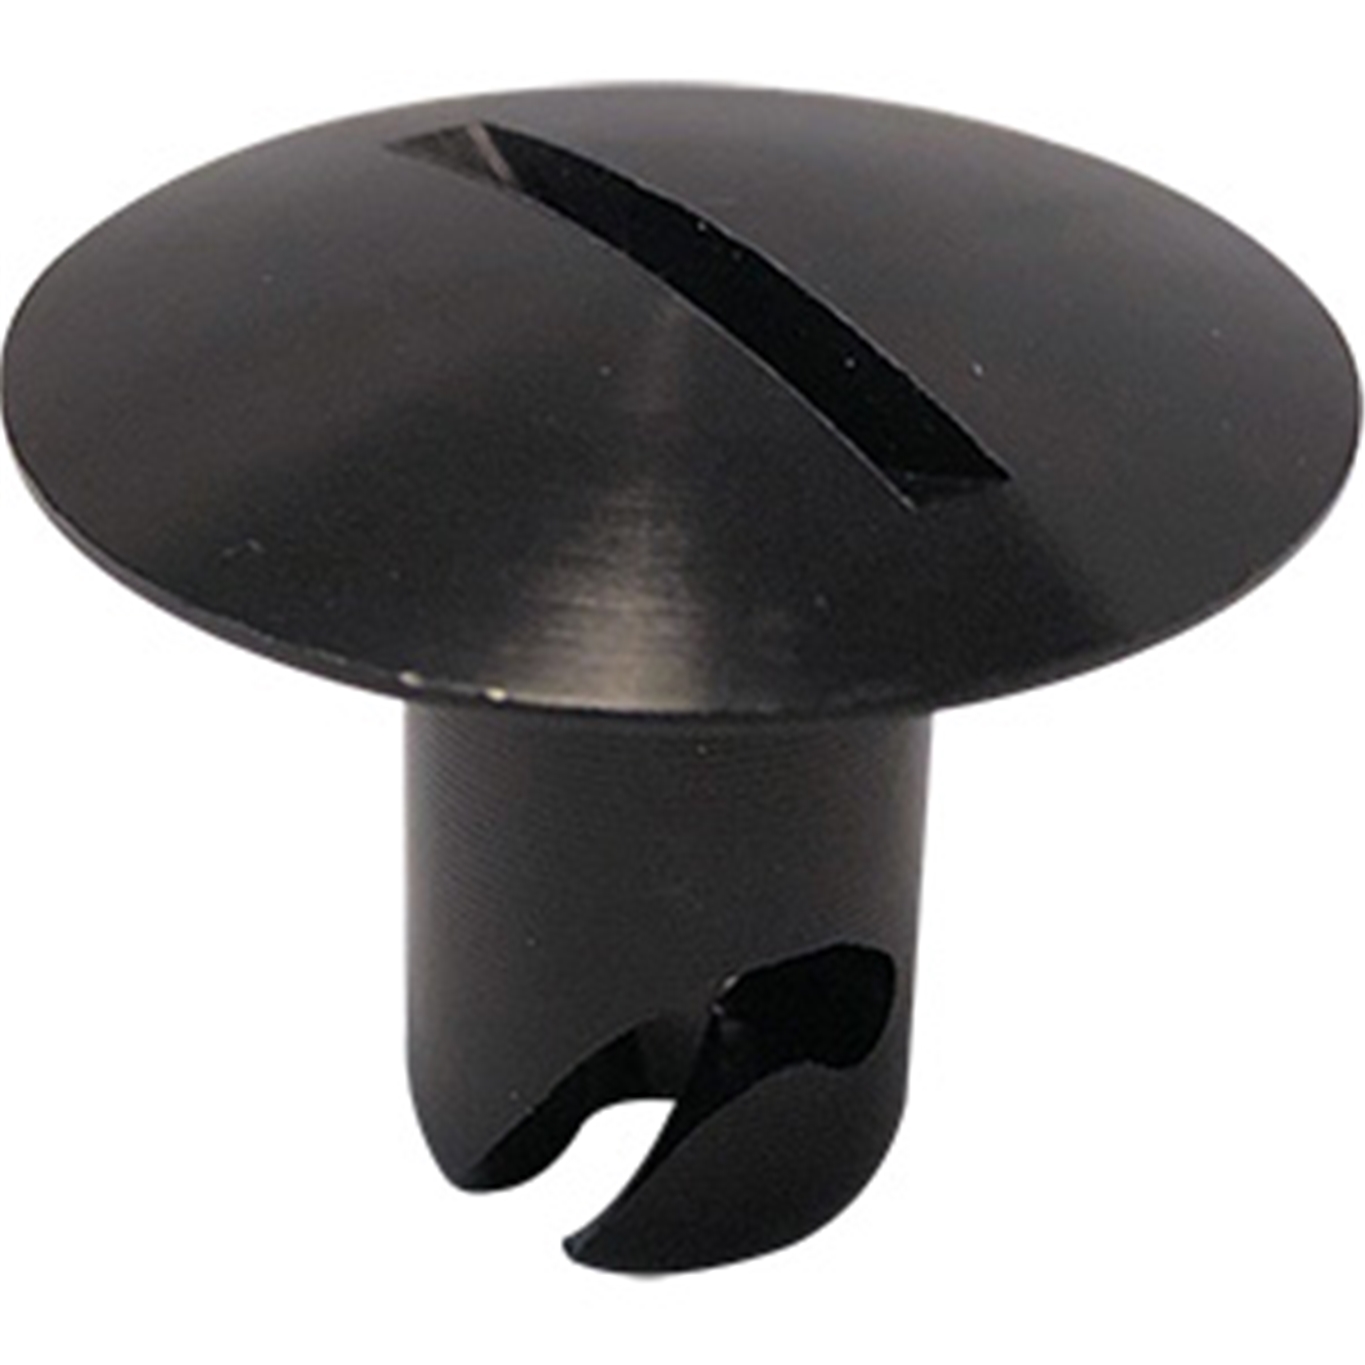 Panelfast Black Big Oval Head Aluminum 7/16".600 Grip